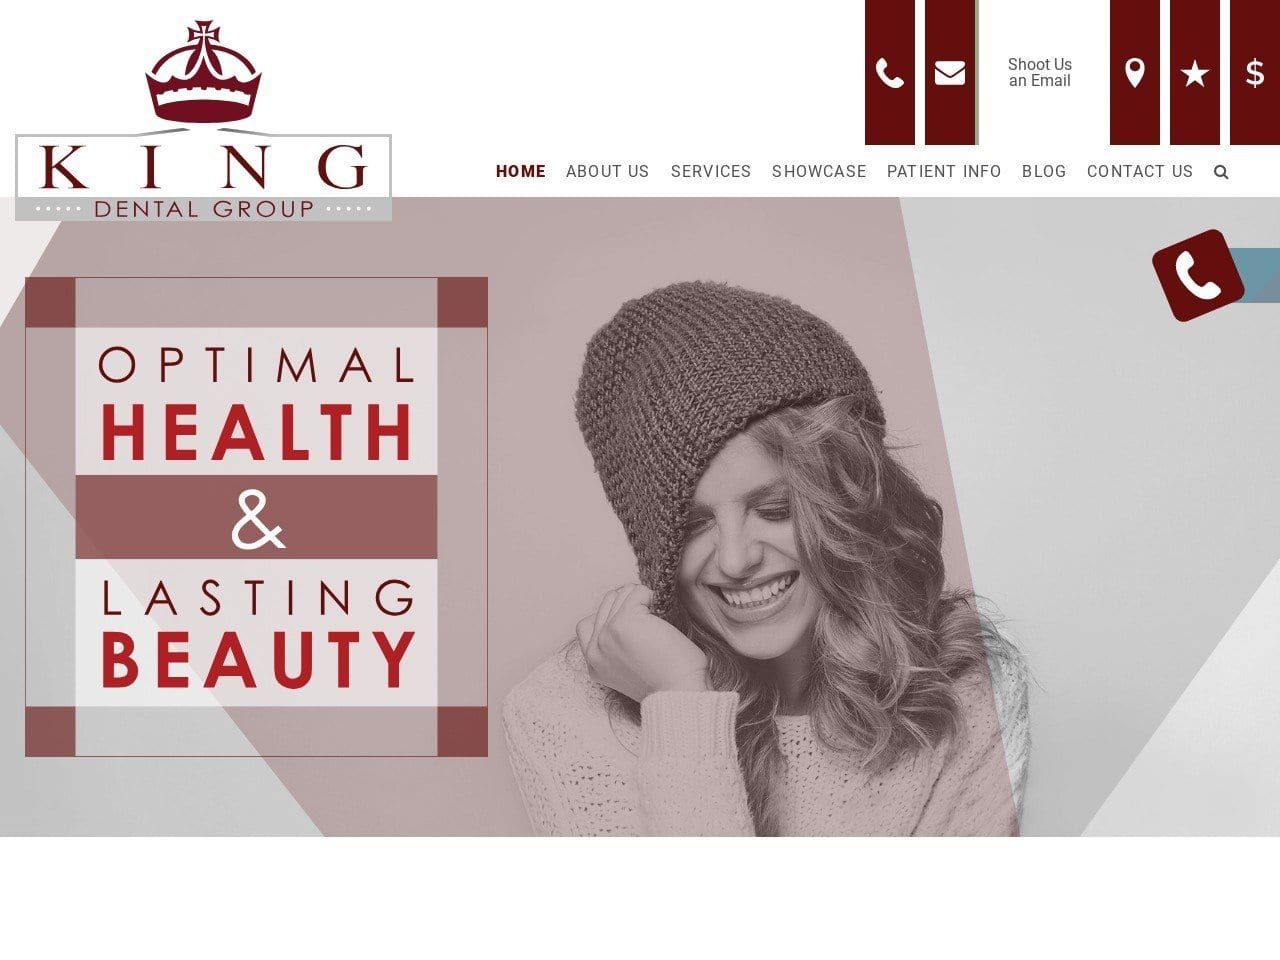 King Dental Group Website Screenshot from kingdentalgroup.com